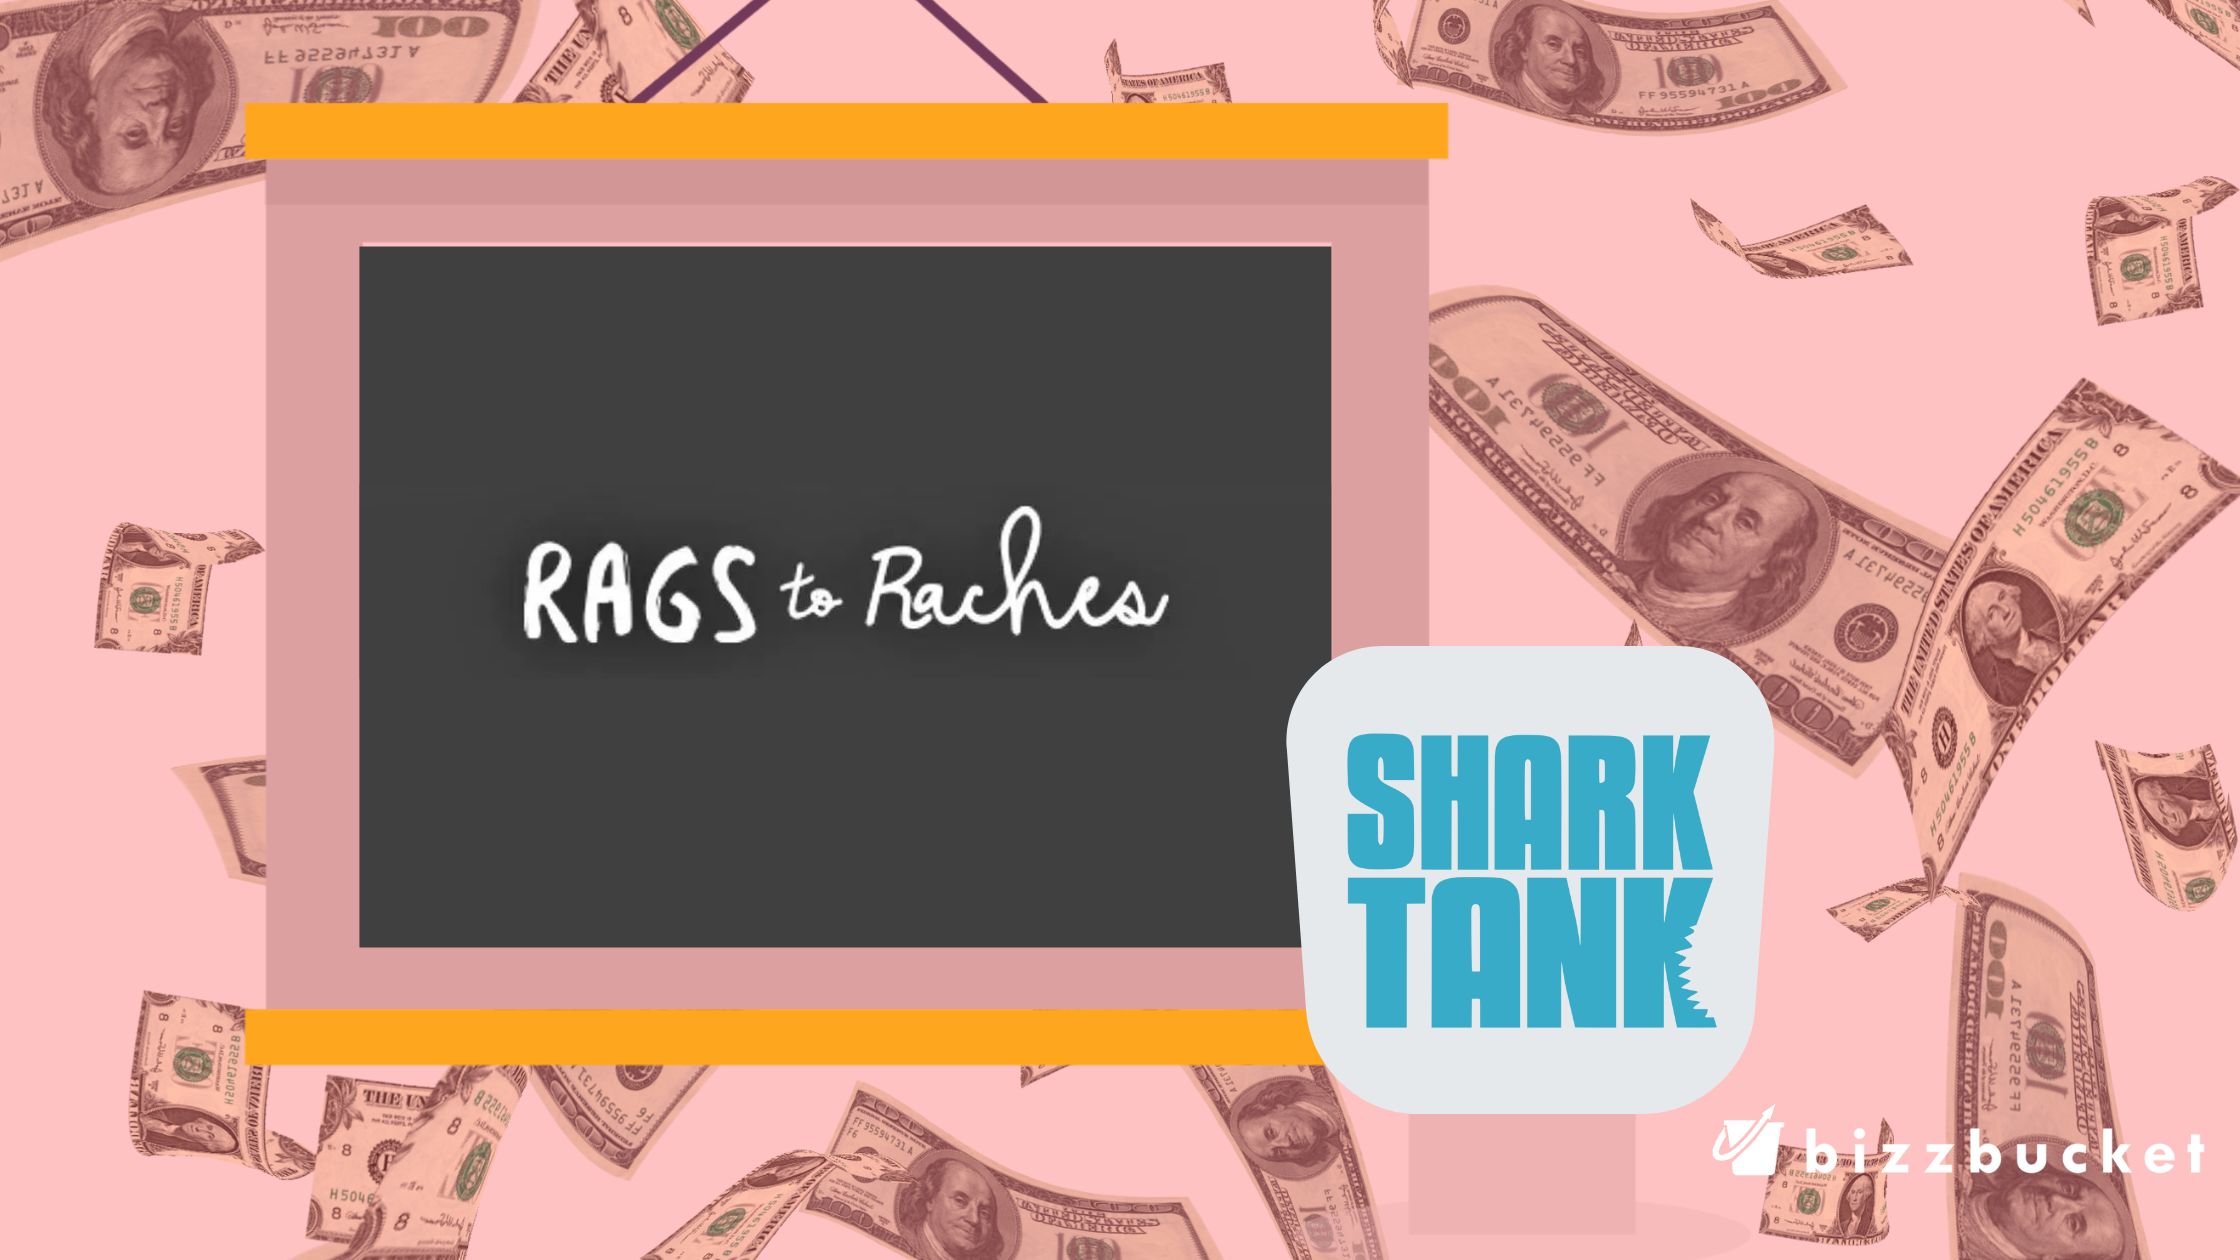 Rags to Raches shark tank update